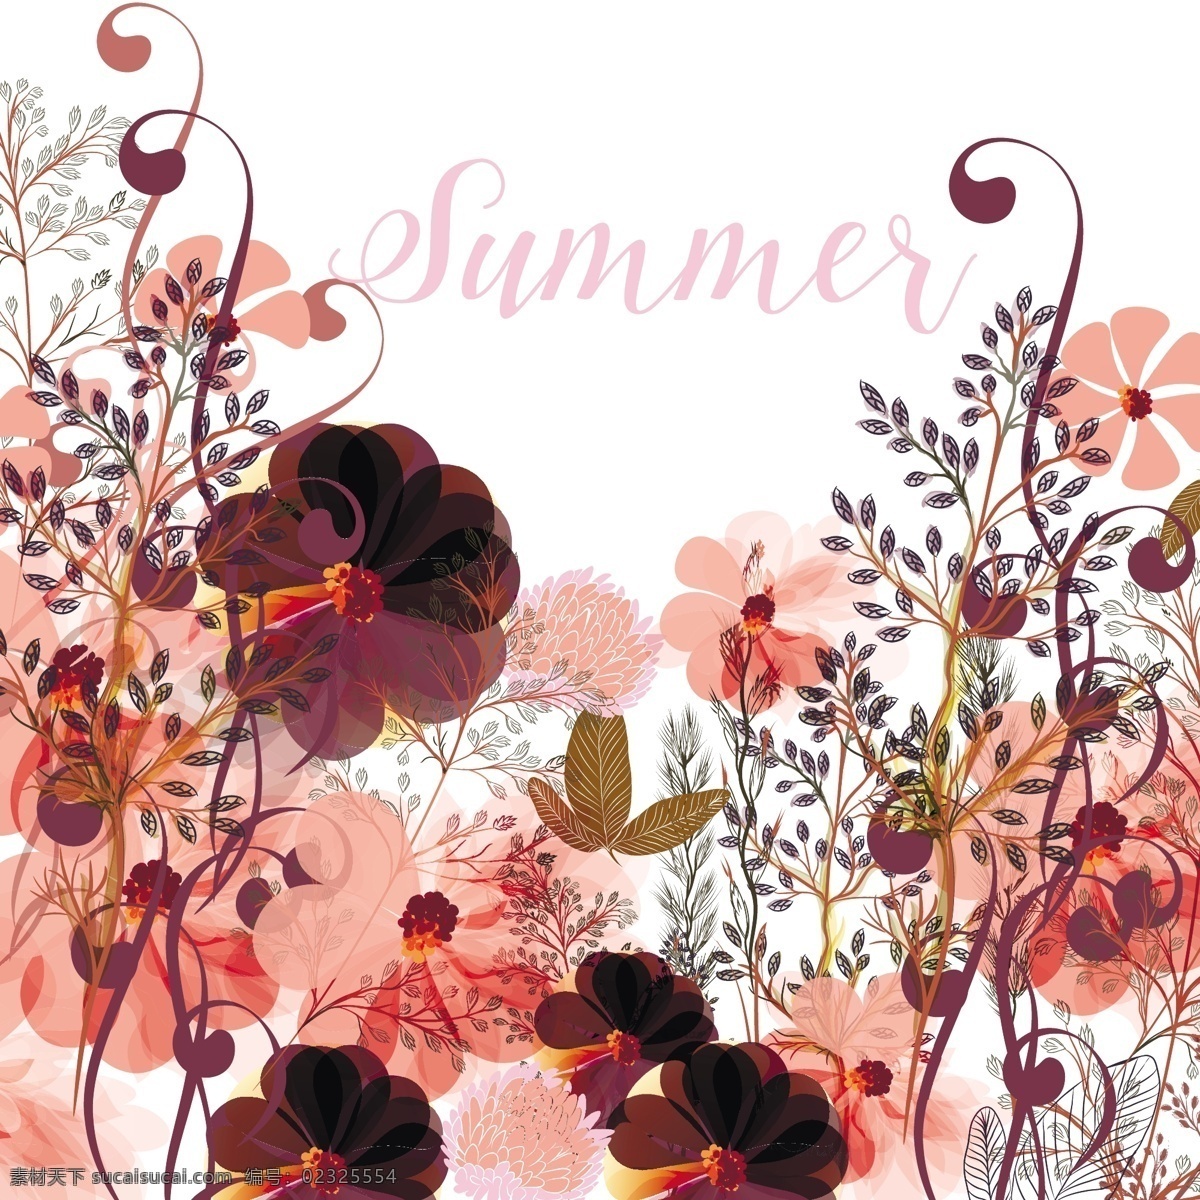 夏花的背景 背景 花卉 手 夏季 自然 花卉背景 手绘 壁纸 弹簧 树叶 涂鸦 度假 素描 植物 绘画